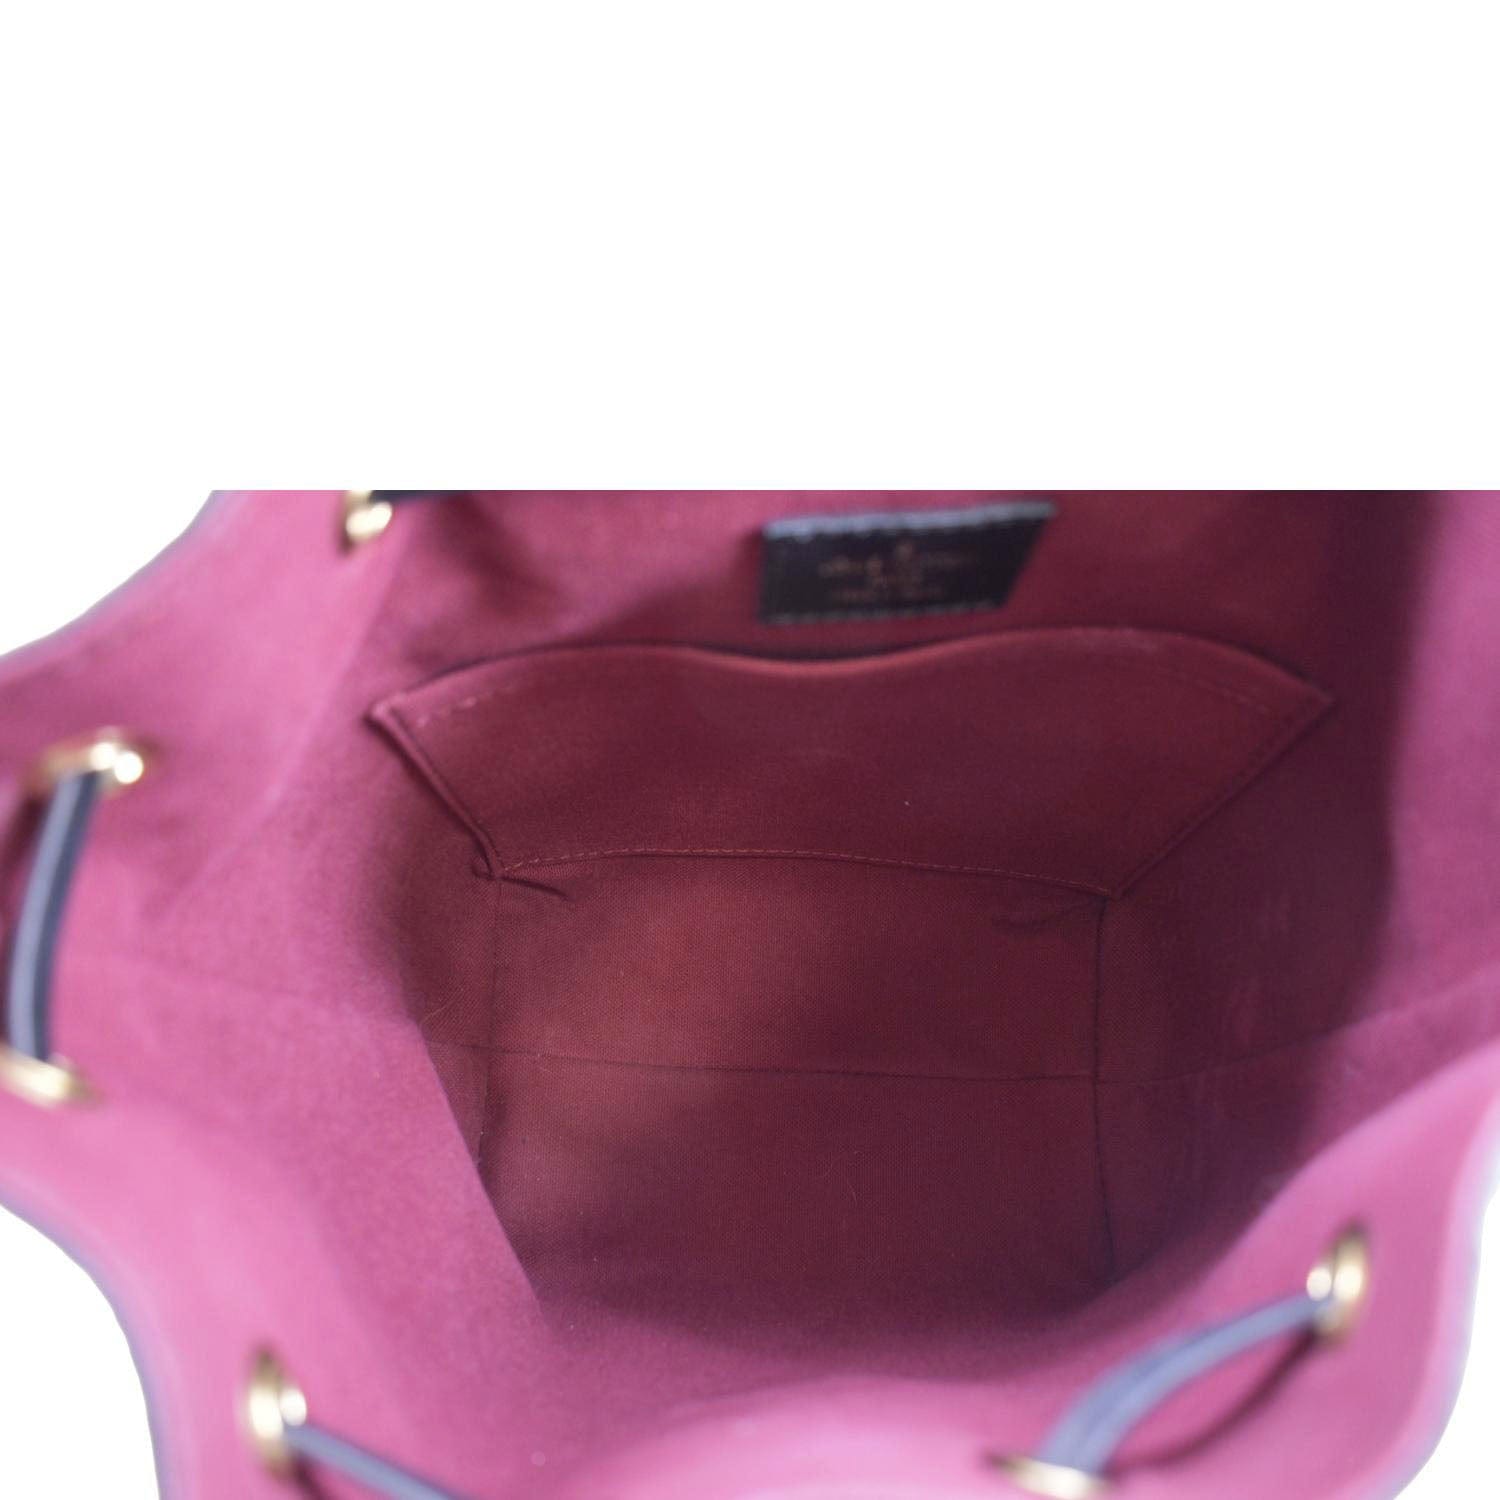 Montsouris BB Monogram Canvas/Natural leather - Handbags